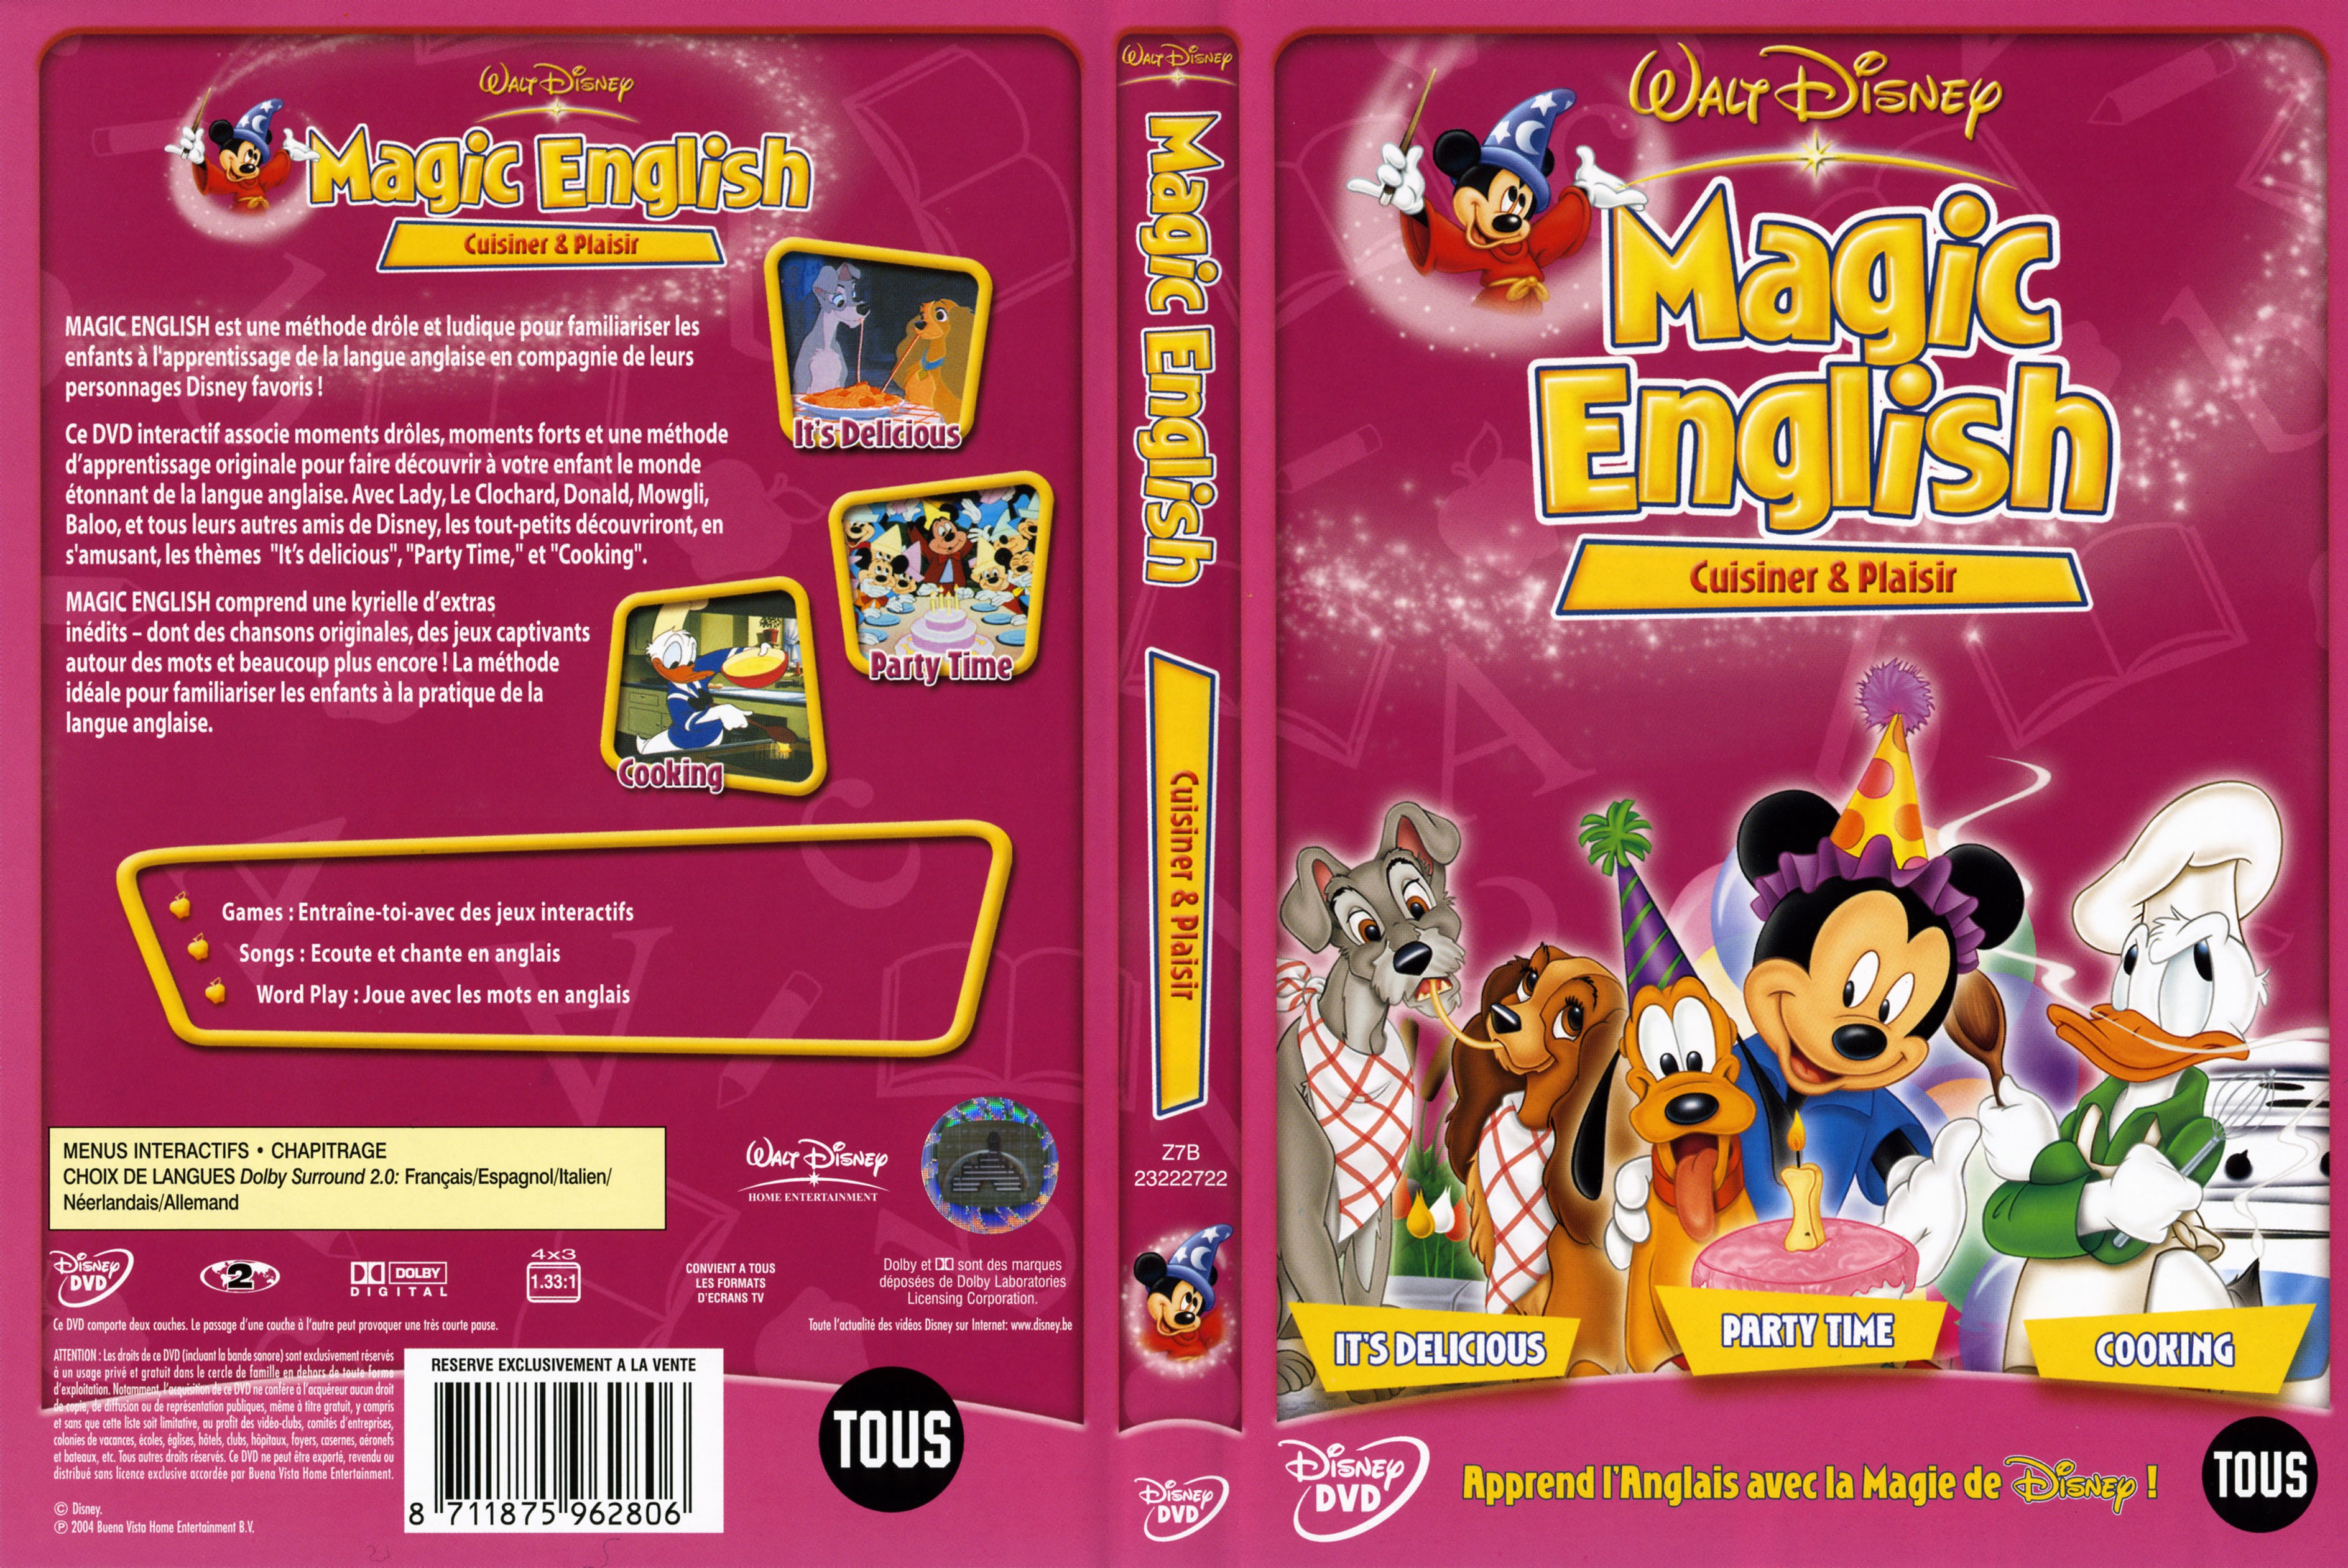 Jaquette DVD Magic english cuisiner et plaisir